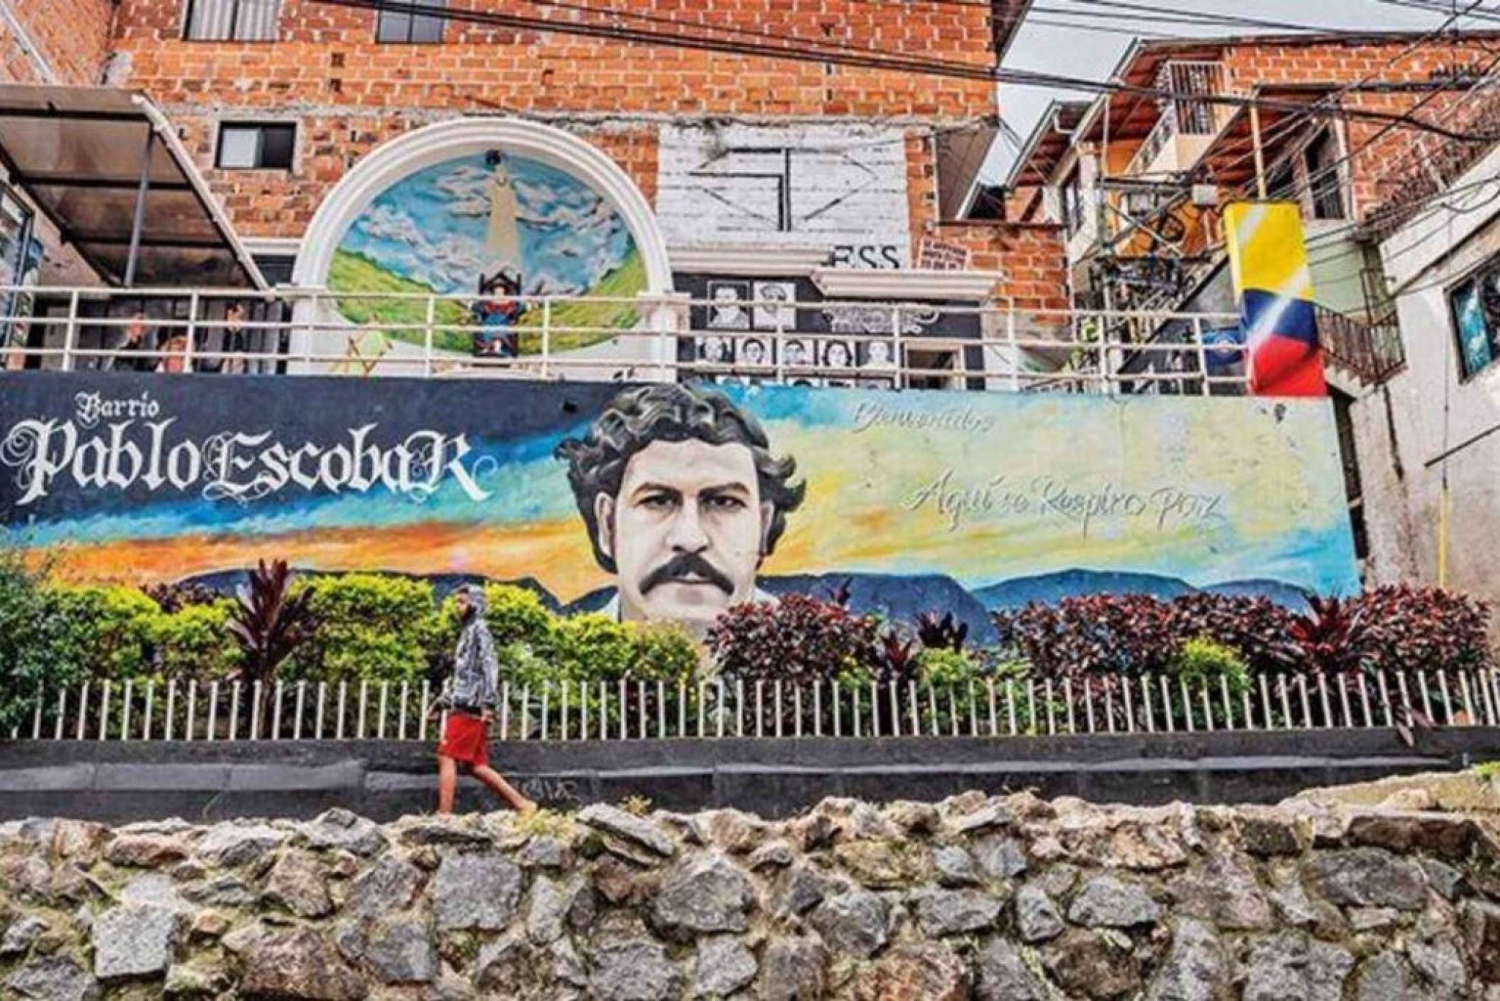 Medellín: Pablo Escobar Tour El hombre que marcó un país